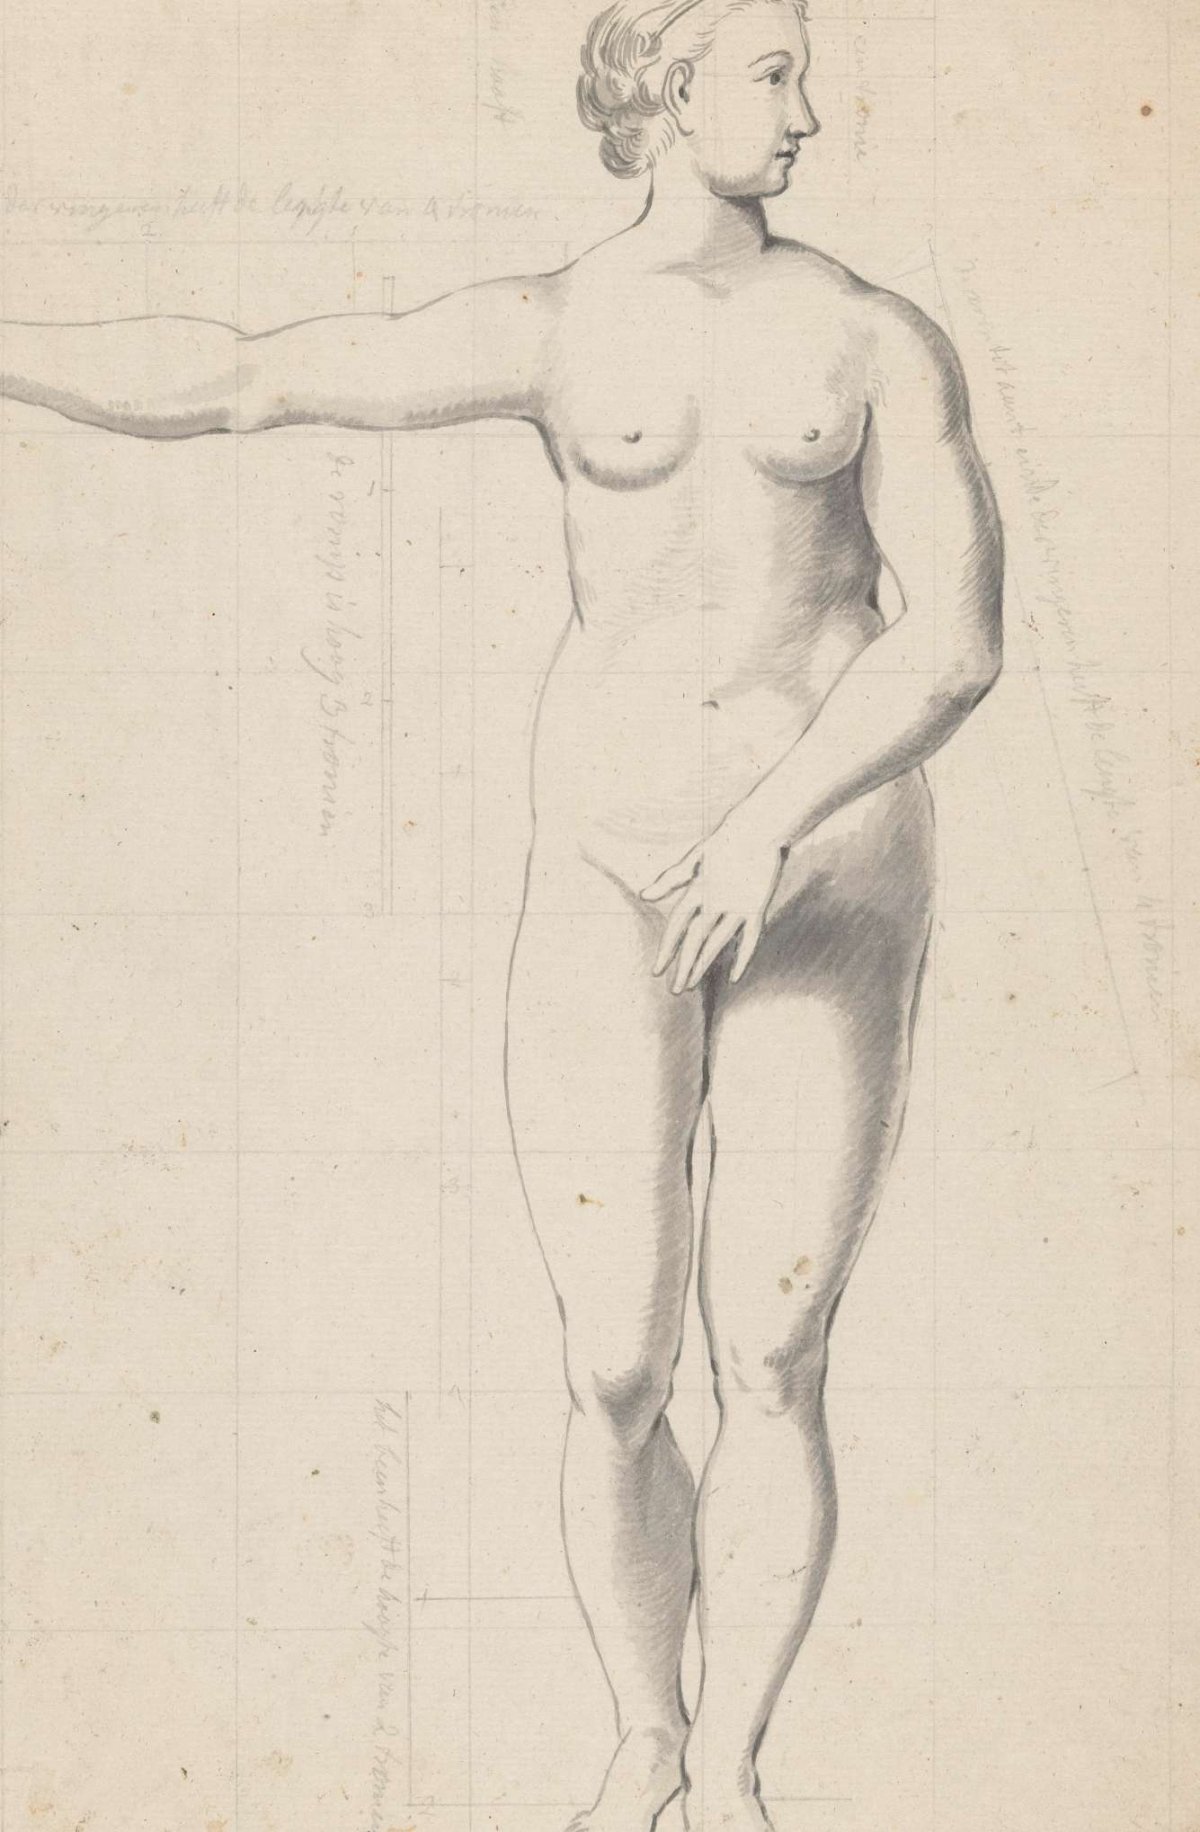 Nude studies of woman and man, Jan Brandes, 1787 - 1808